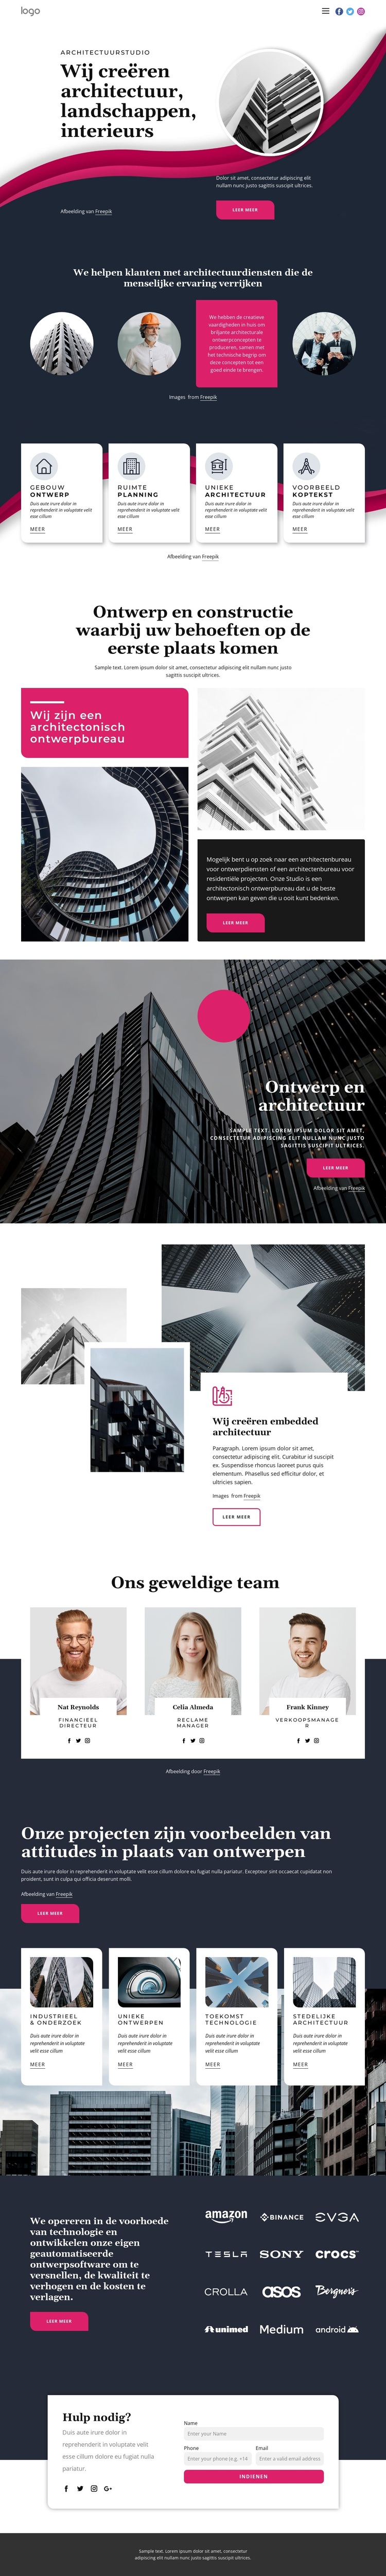 Wij creëren geweldige architectuur WordPress-thema